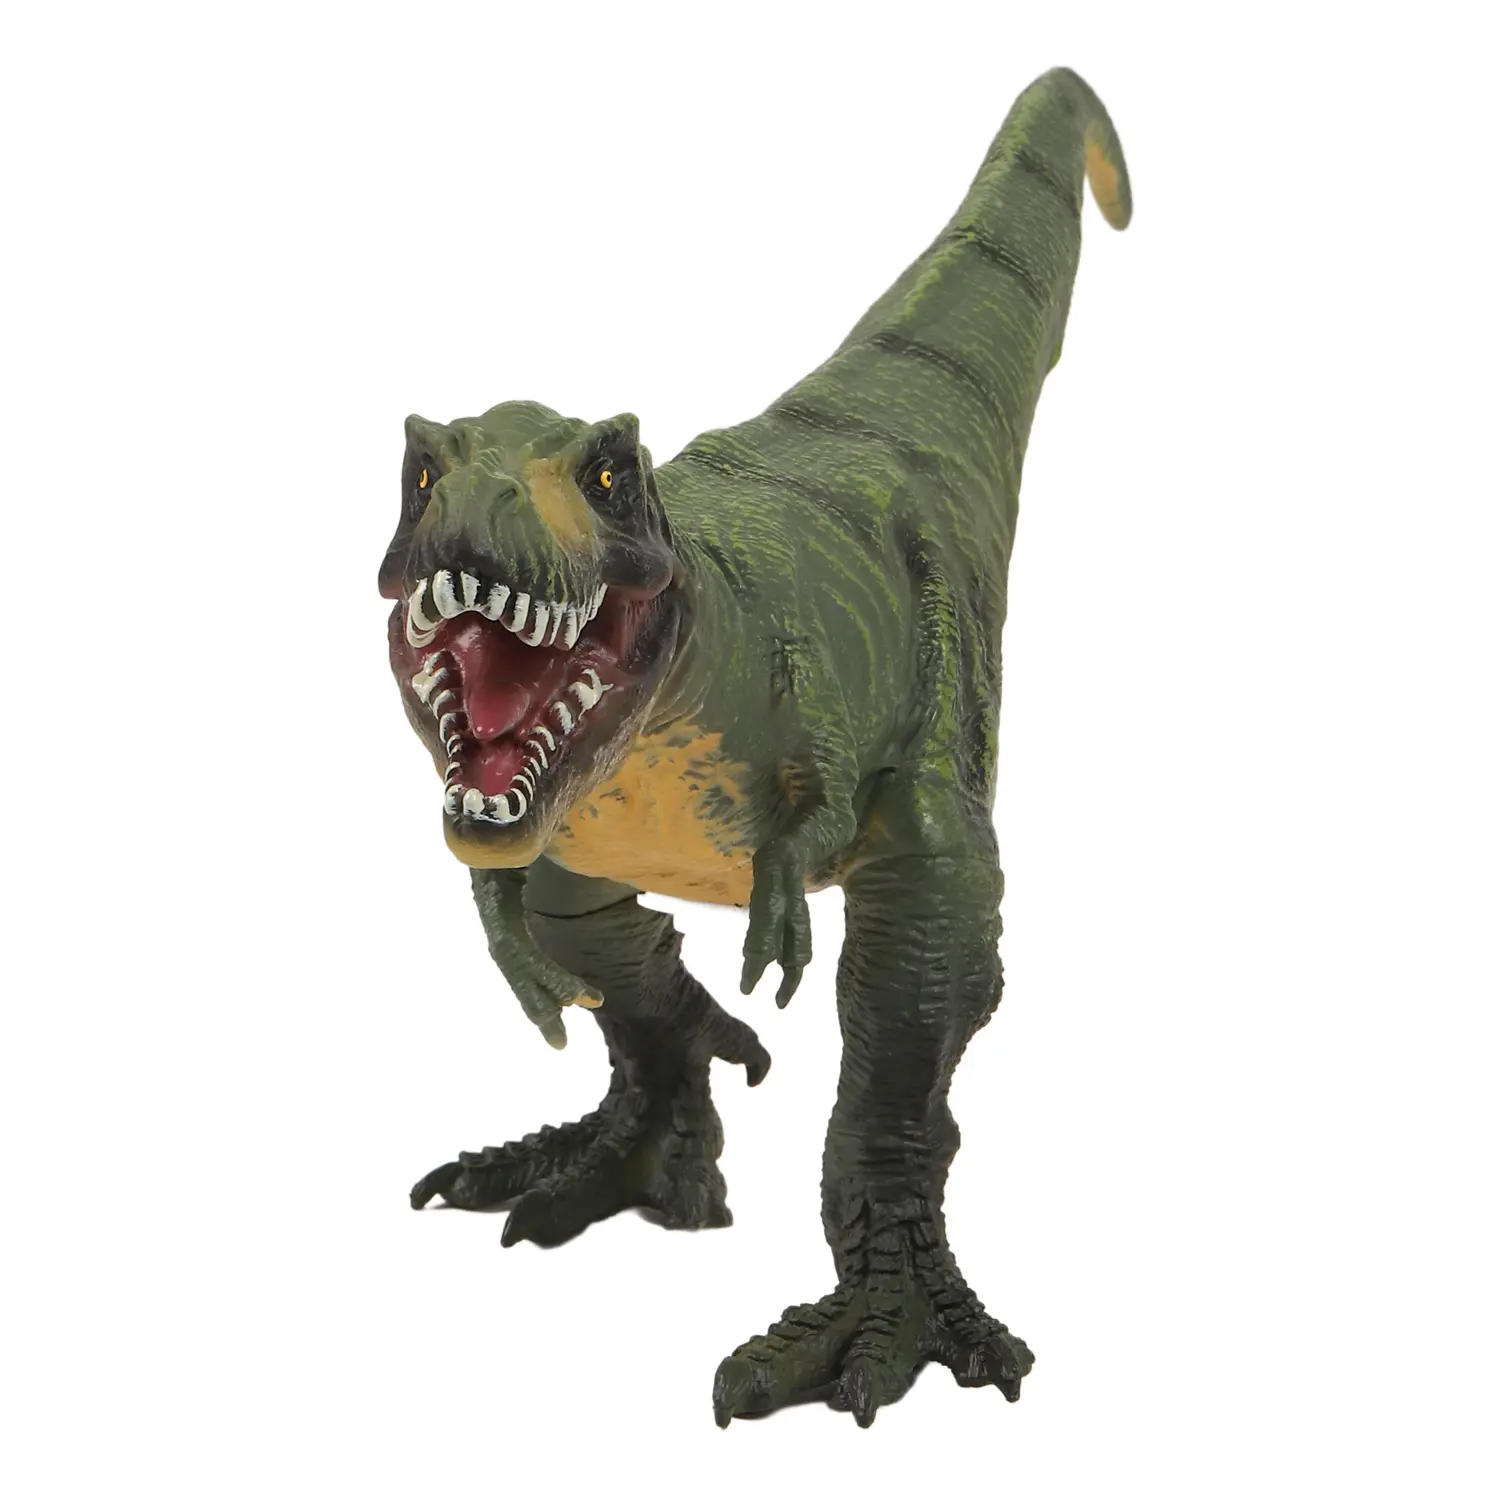 Игрушка Динозавр, эластичная поверхность с шероховатостями, мягкий наполнитель, бирка, 32X8.2X14.8JB